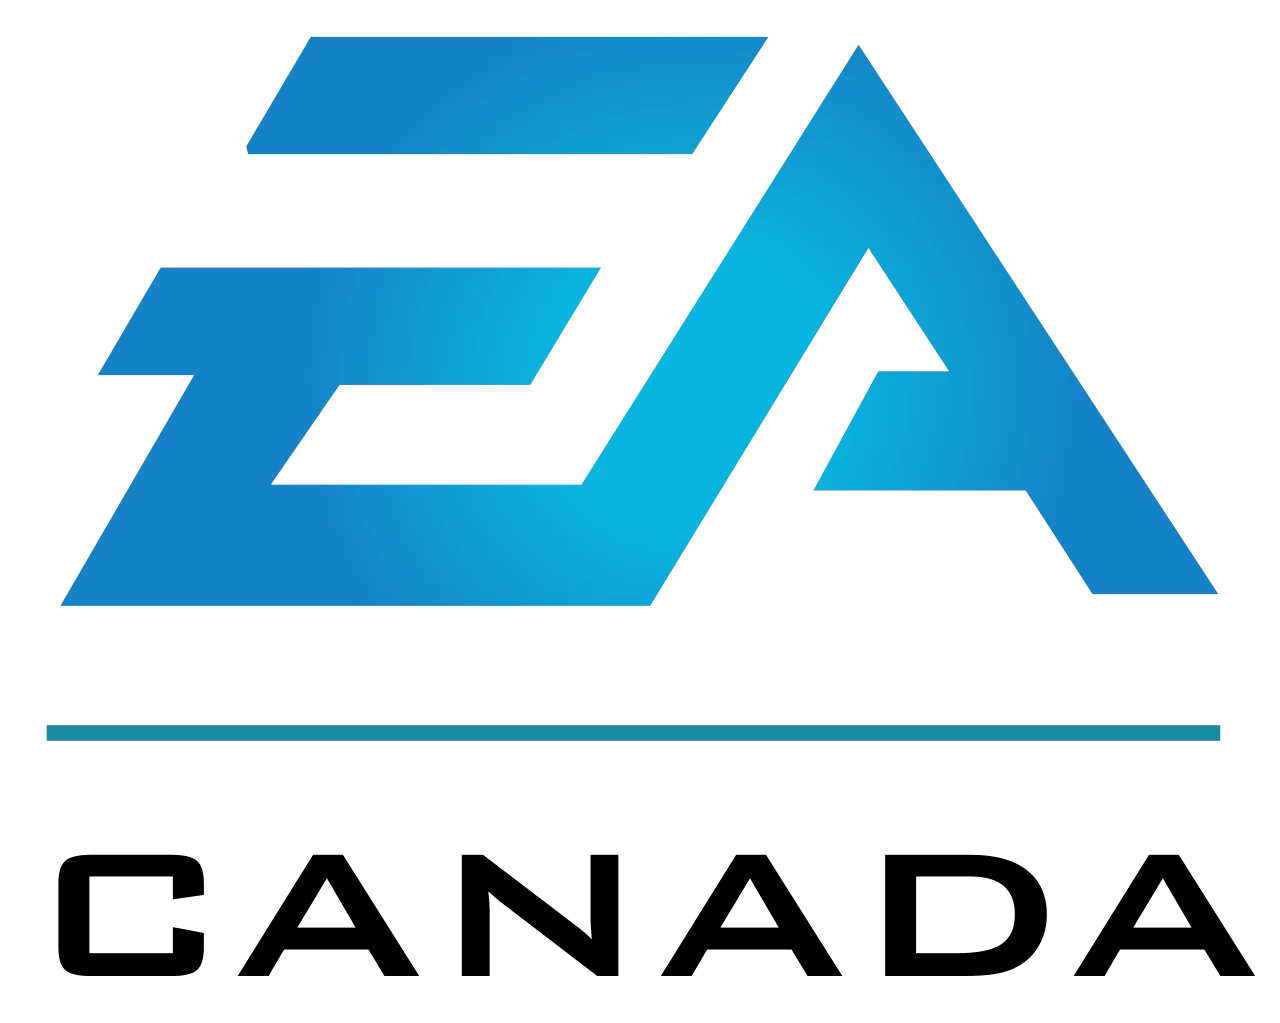 logo da desenvolvedora EA Vancouver